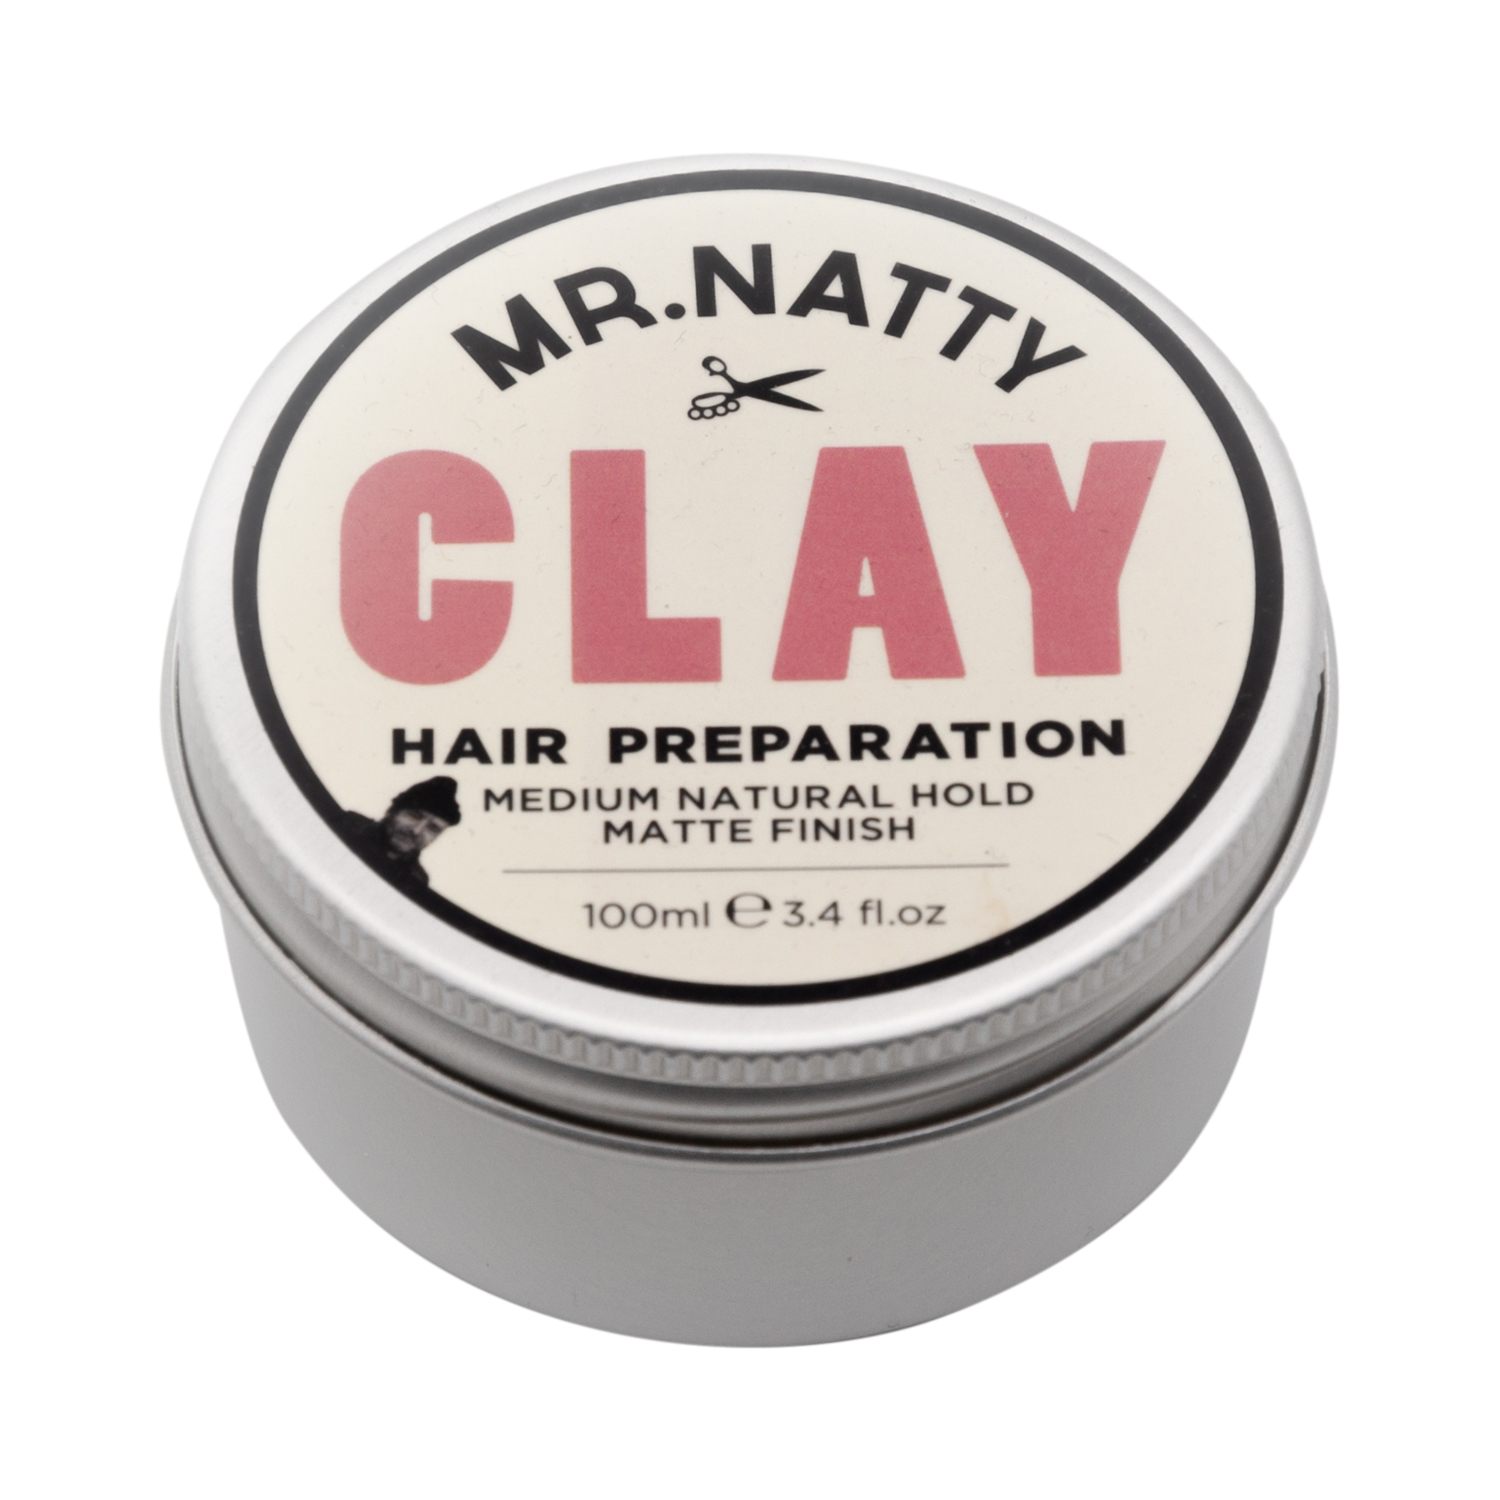 Mr Natty - Clay Hair Preparation - Pomade - natürlicher Halt / mattes Finish